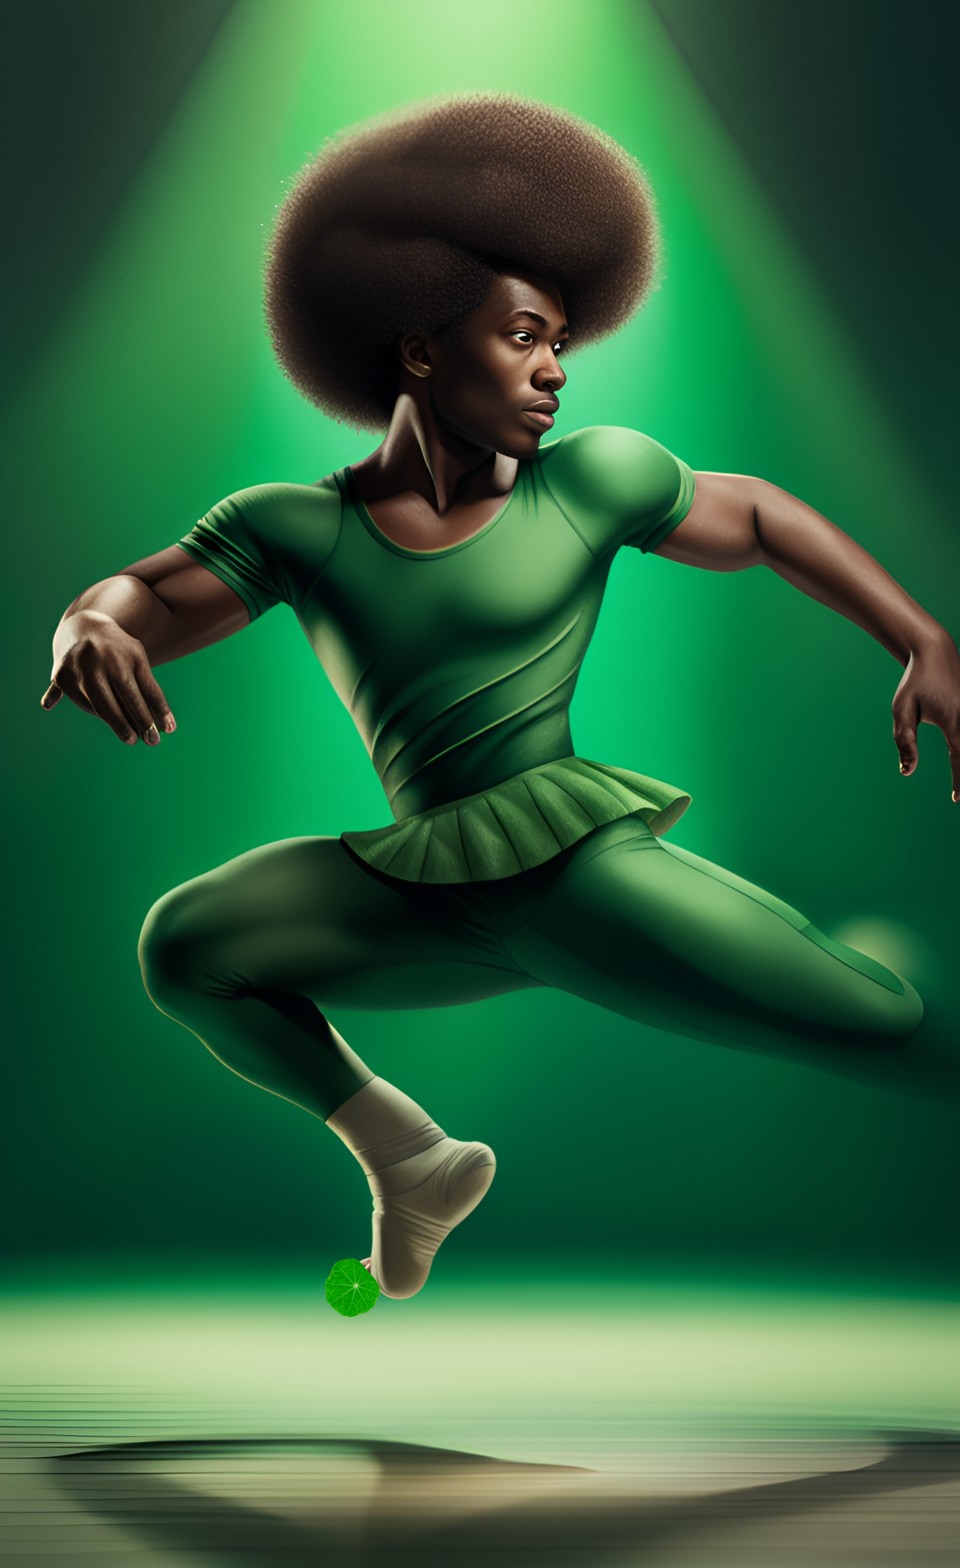 Jamaican magical ballet dancer Jamai228